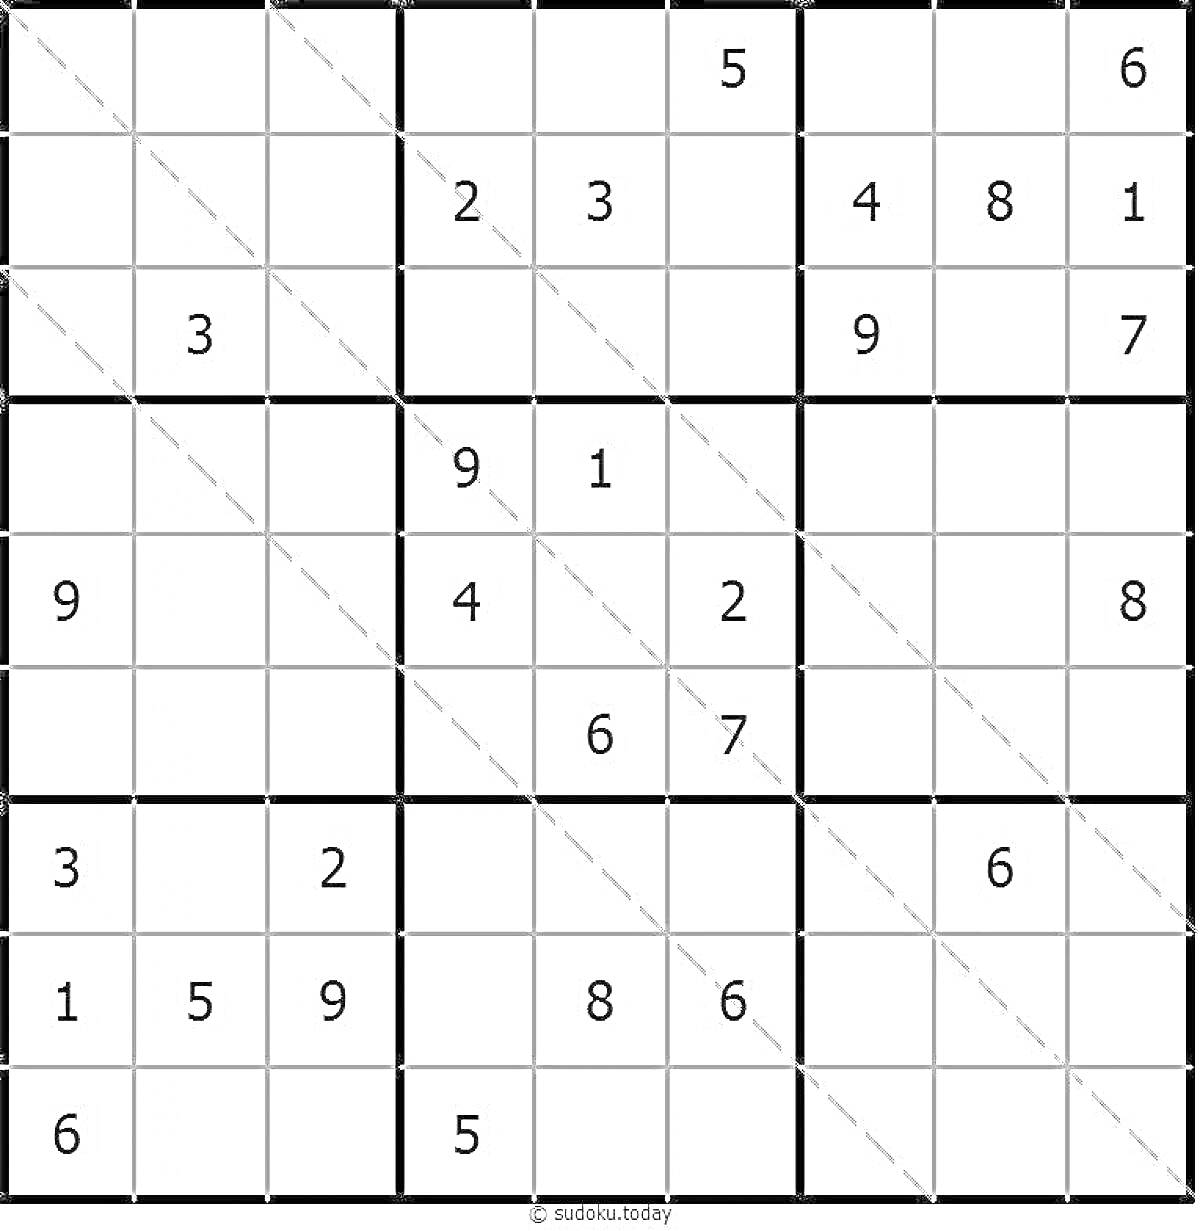 Схема судоку с 3x3 блоками и предварительно заполненными числами